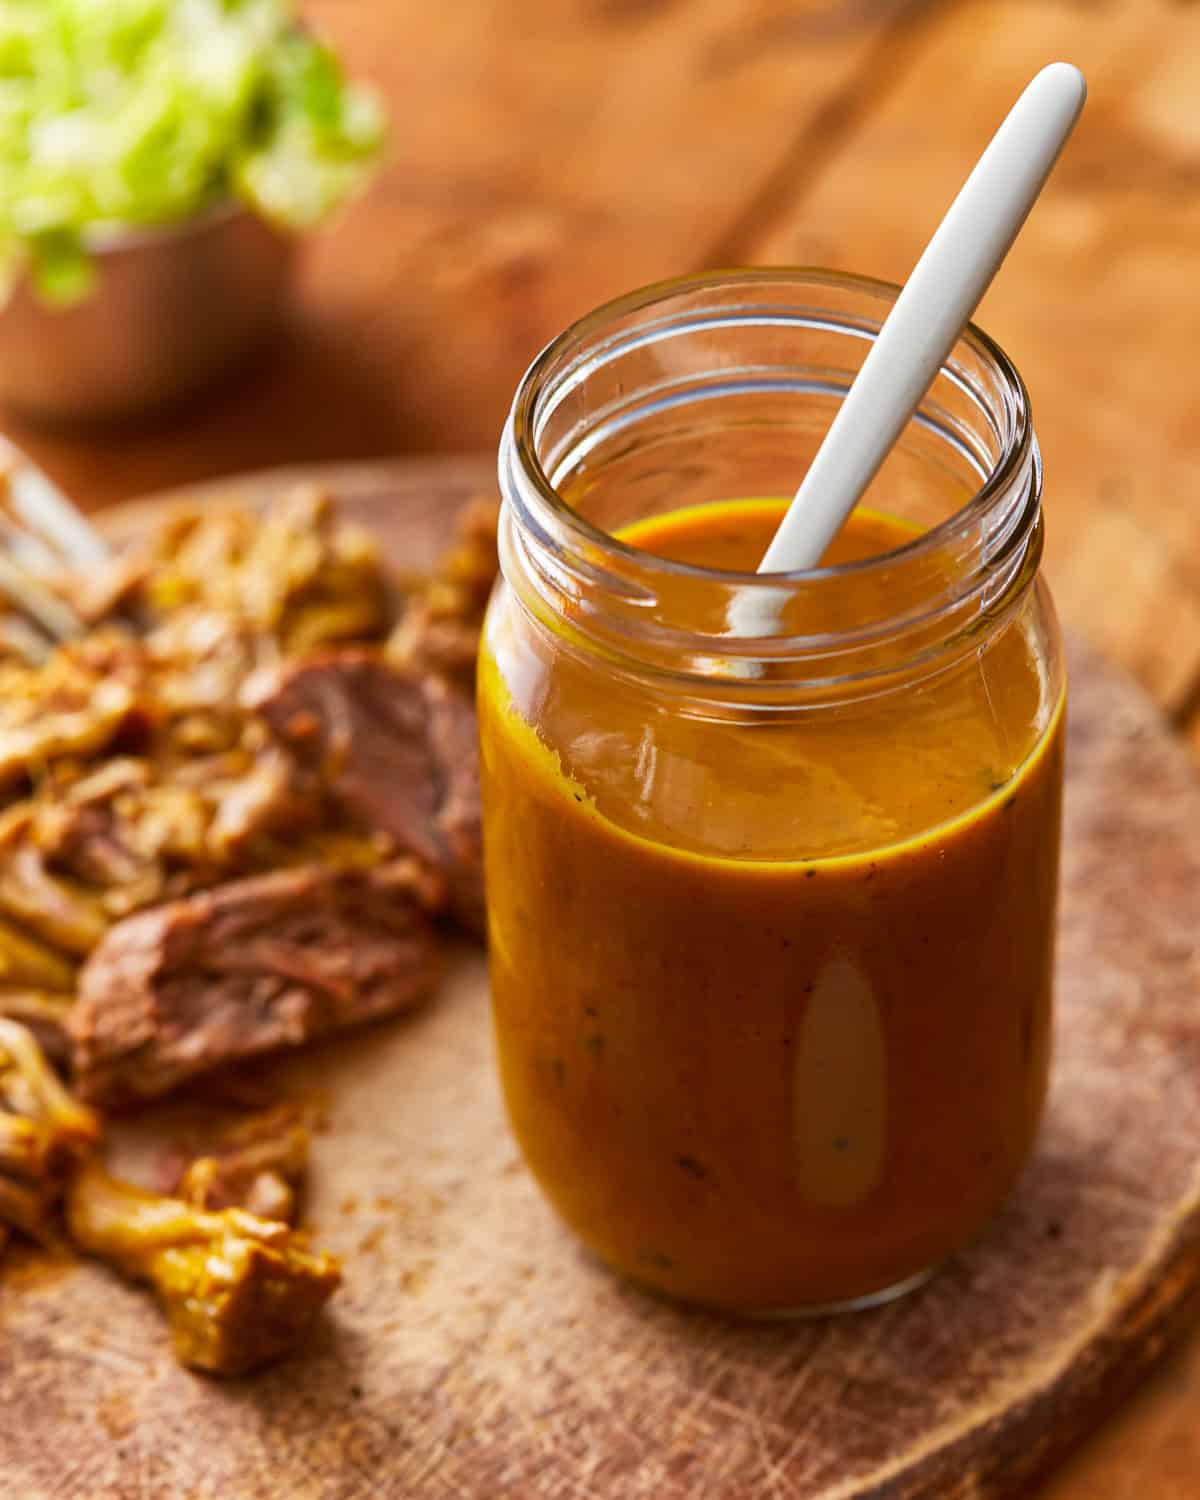 carolina gold sauce in a mason jar with a spoon.